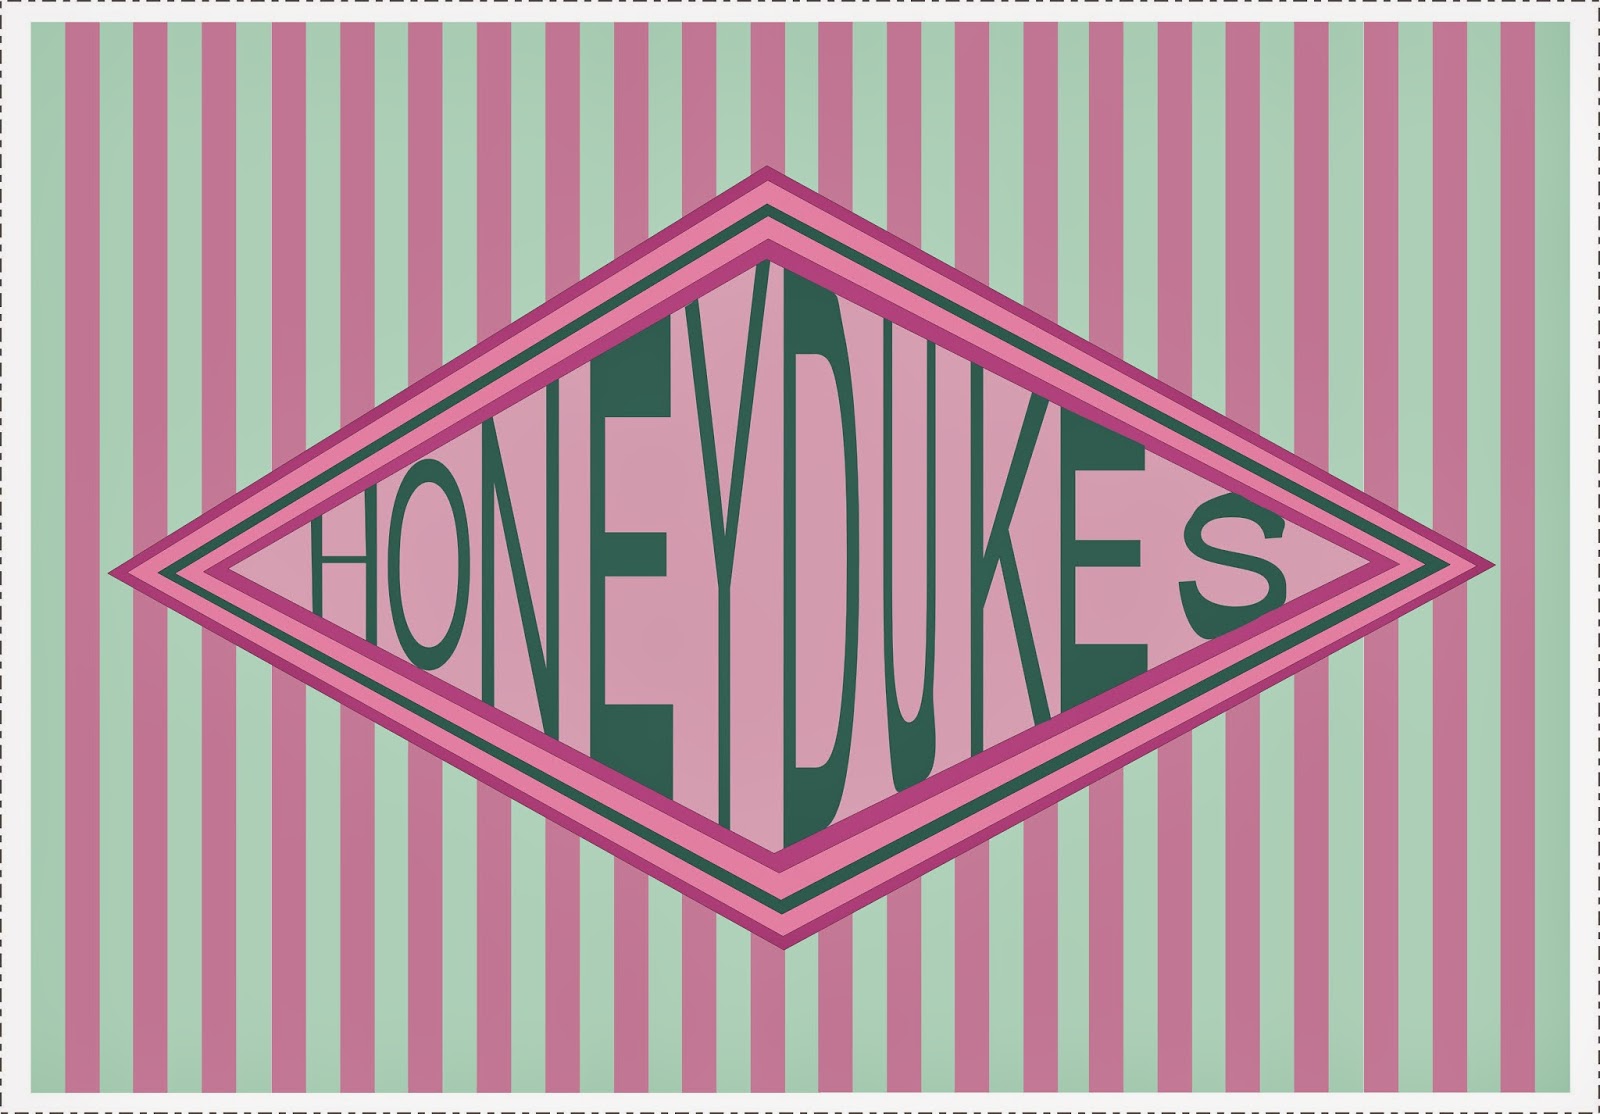 honeydukes logos